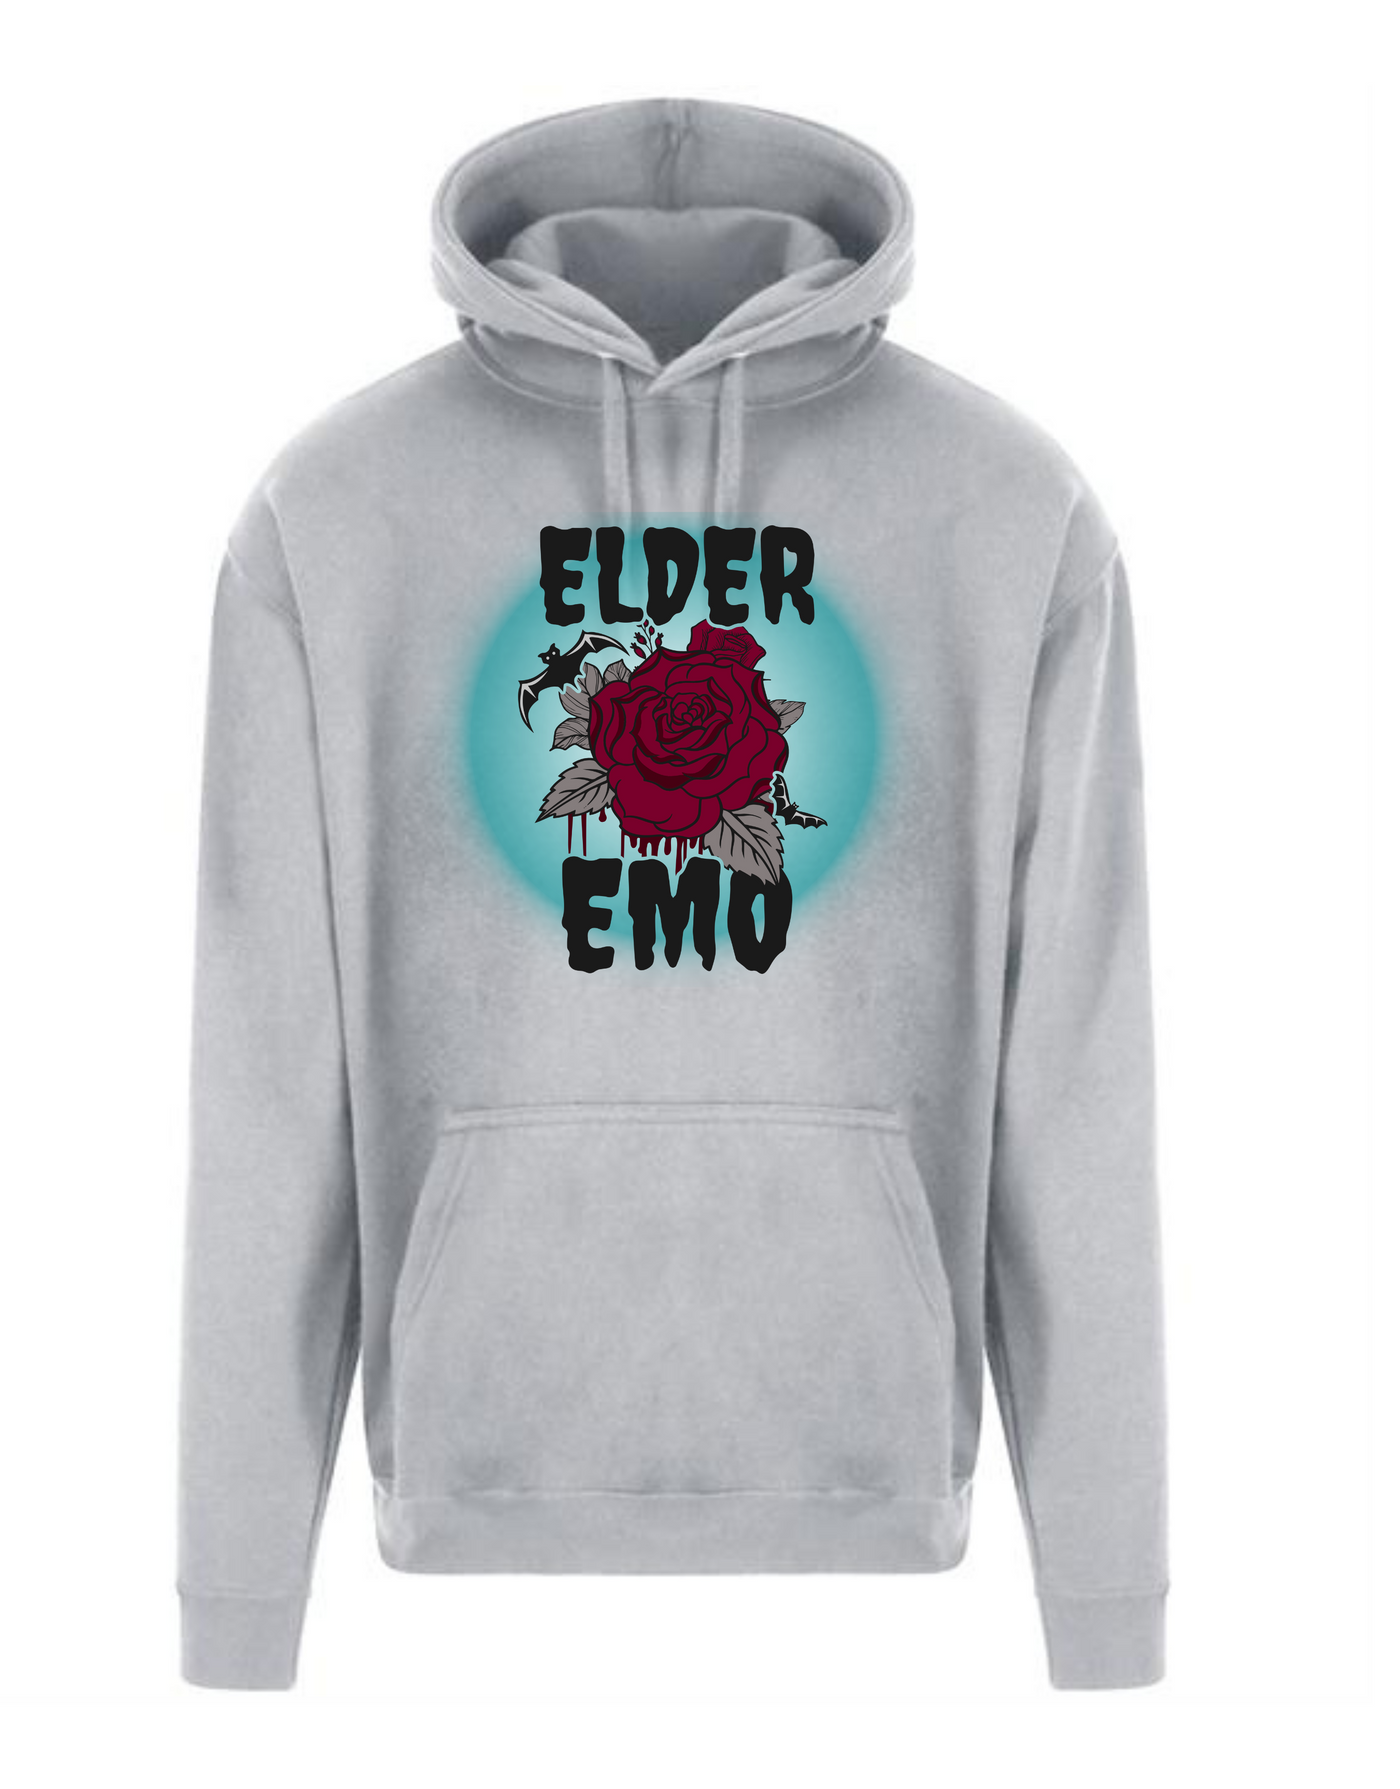 "Elder Emo" Longline Unisex Hoodie